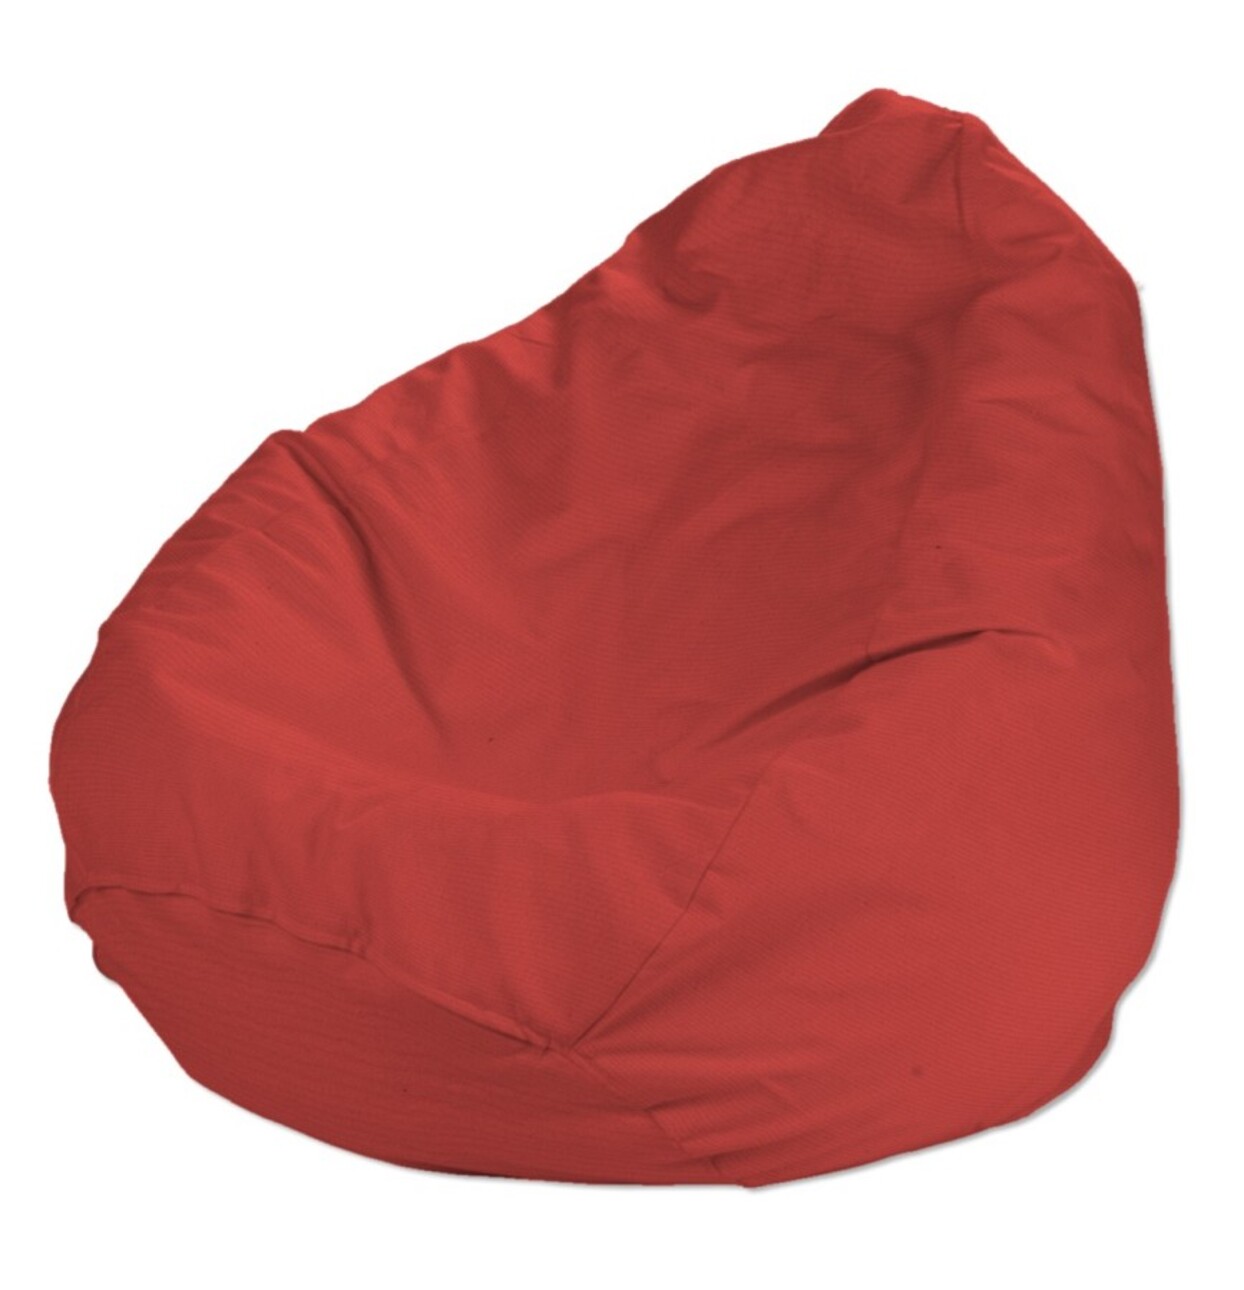 Bezug für Sitzsack, rot, Bezug für Sitzsack Ø50 x 85 cm, Loneta (133-43) günstig online kaufen